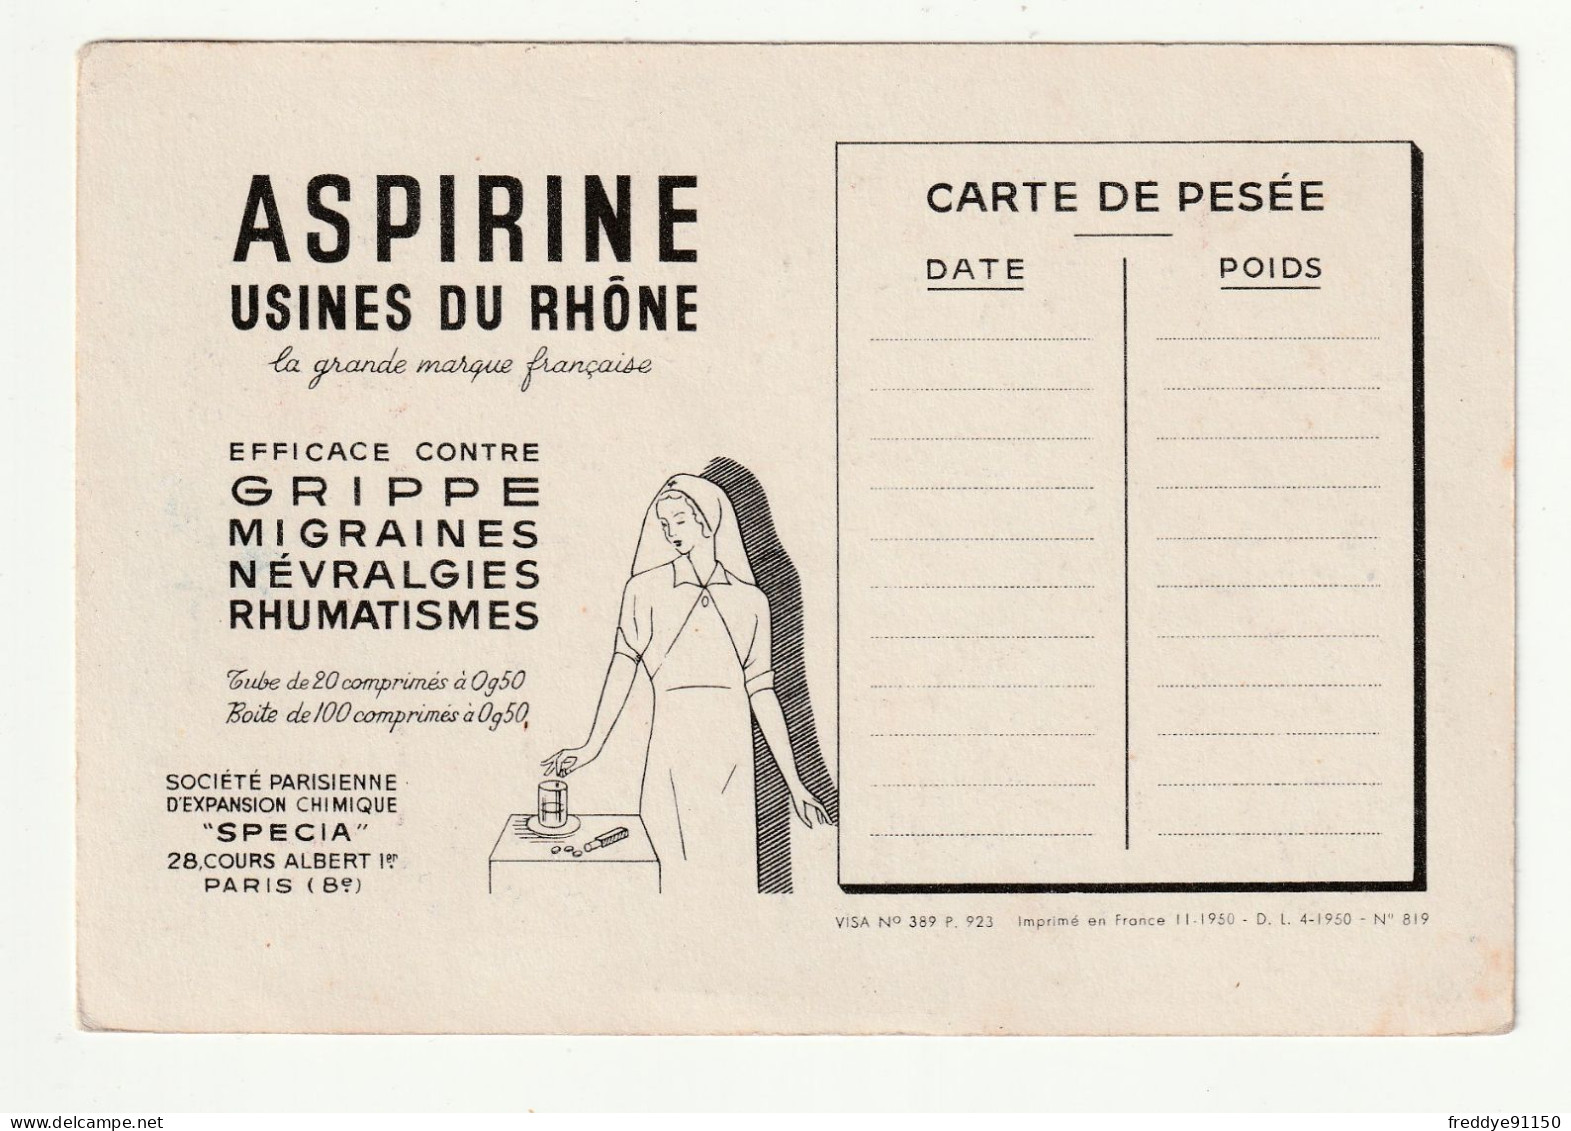 28 . Chartres . Publicite Aspirine  . Les Corporations D'apres Les Vitraux De La Cathedrale . Le Boucher - Chartres